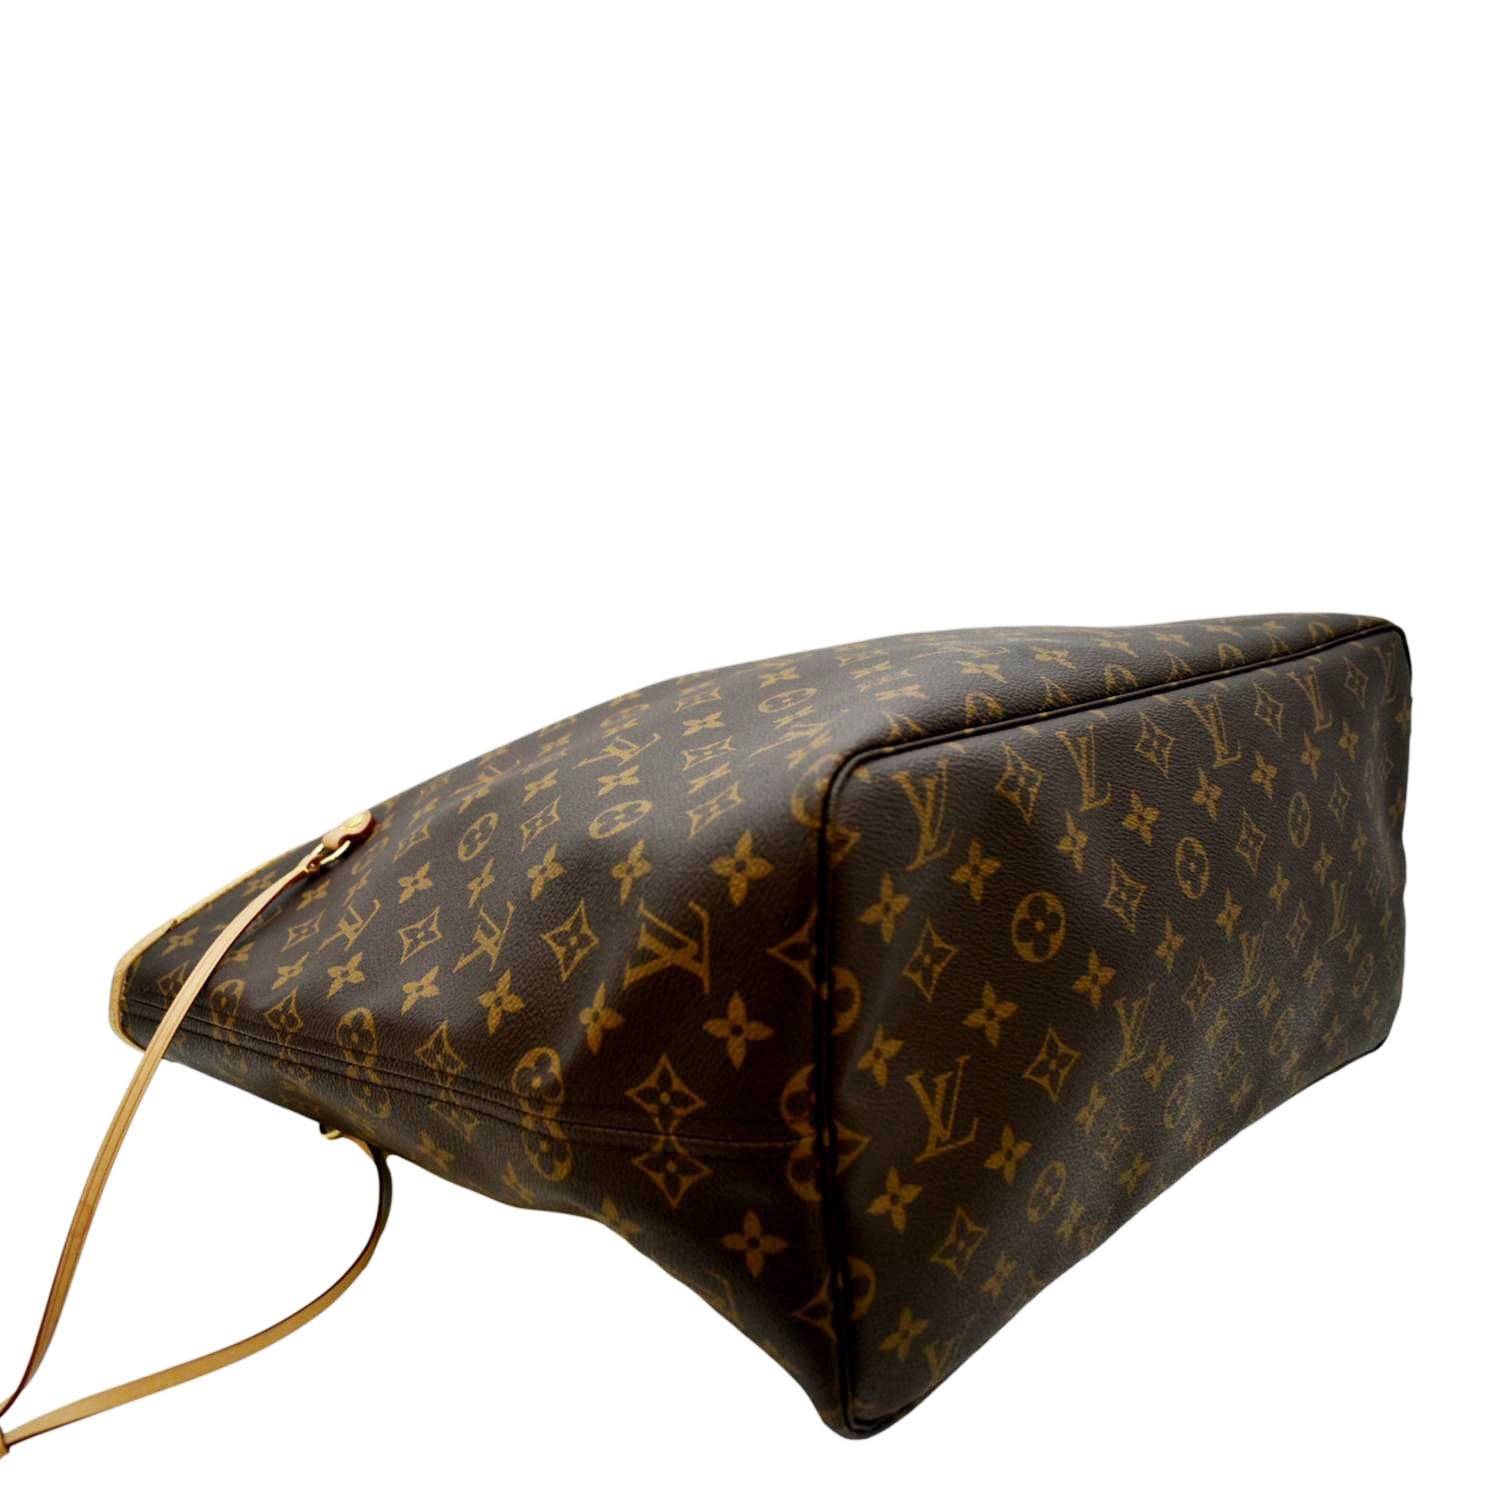 Neverfull GM bag by Louis V. Handbag, women's bag, luxury bag